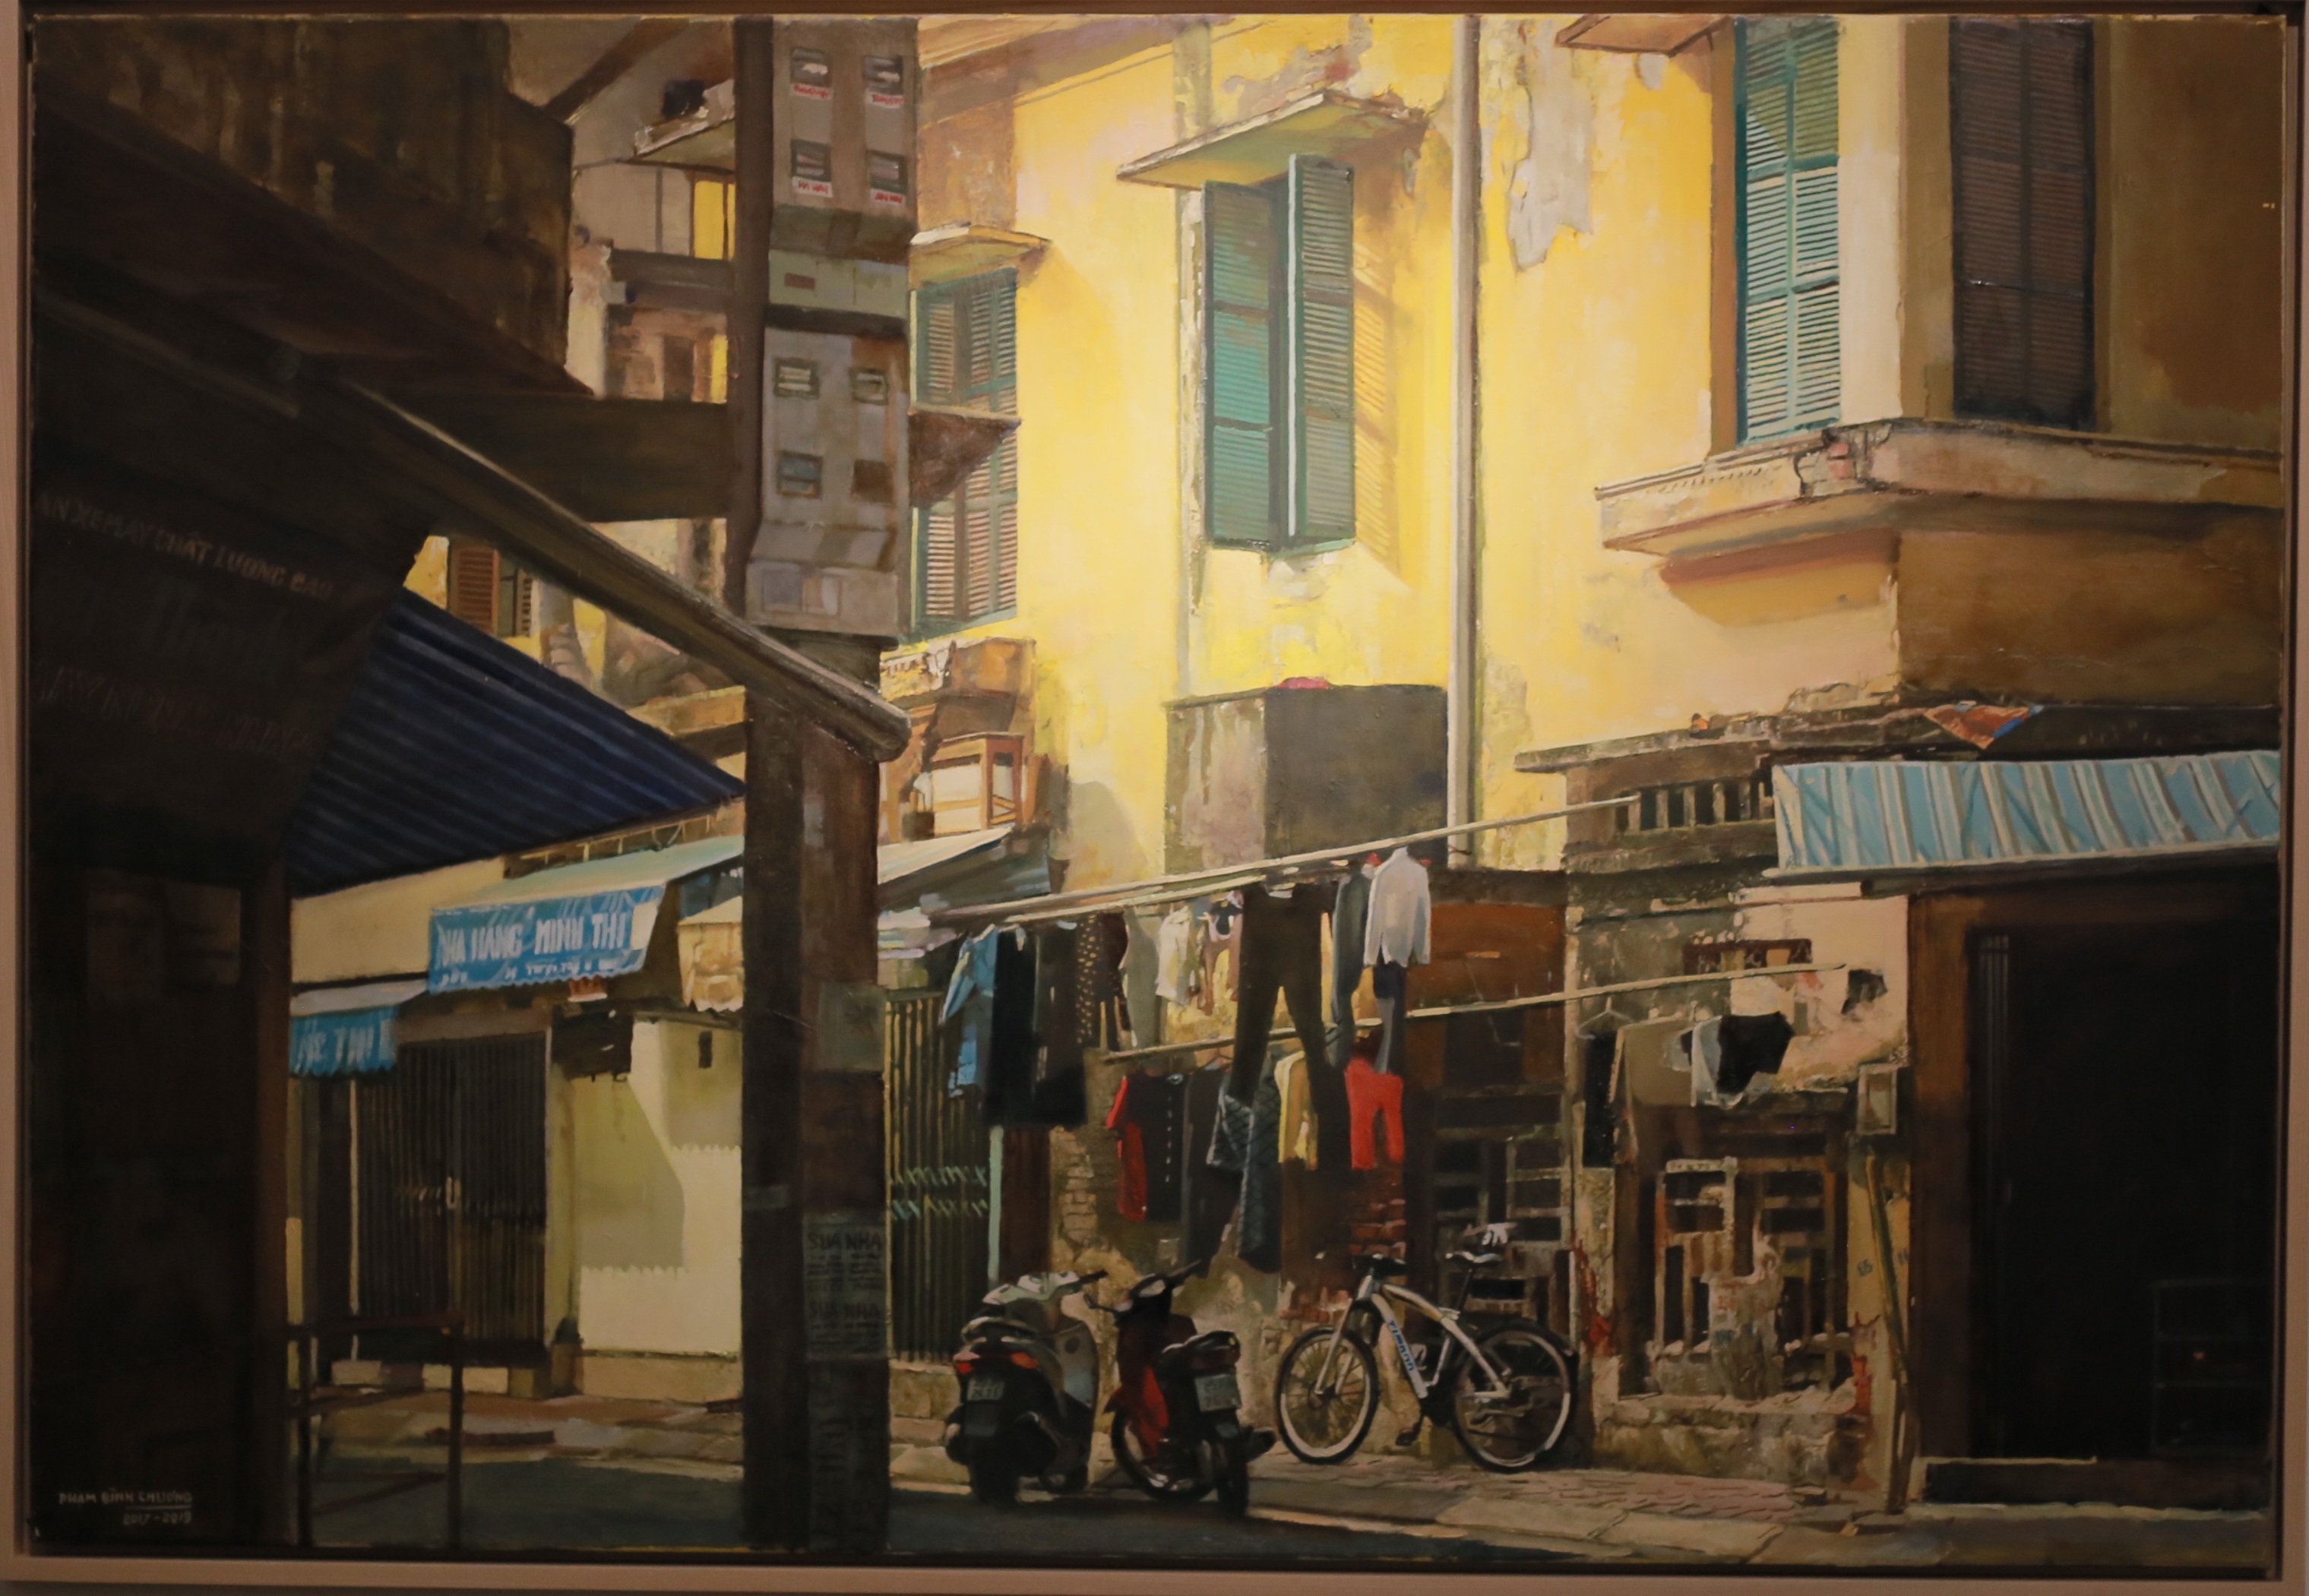 Hà Nội thanh bình qua những bức tranh "xuống phố" của Phạm Bình Chương